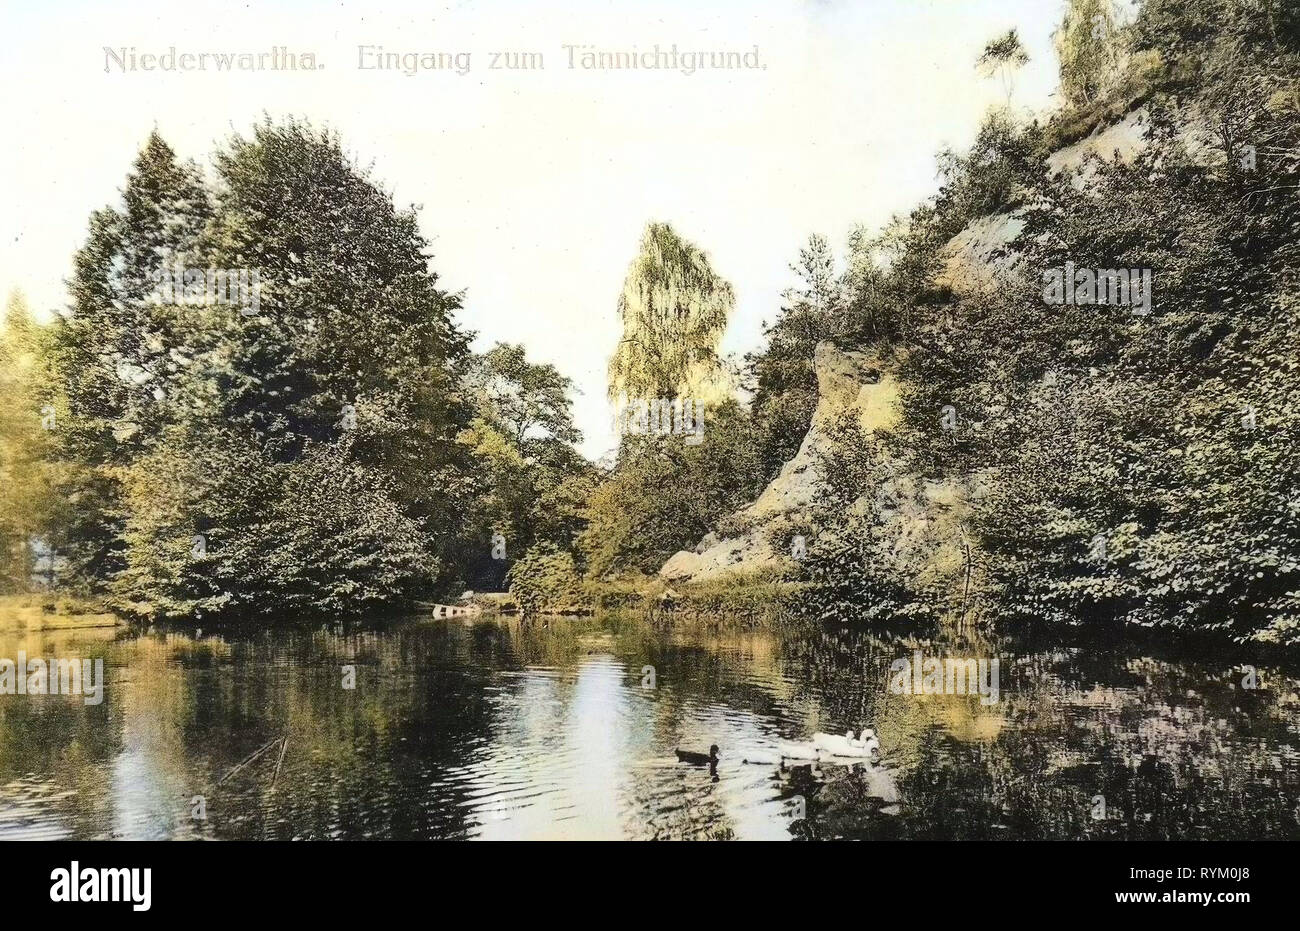 Tännichtgrund, 1906, Dresden, Niederwartha, Eingang zum Tännichtgrund, Germany Stock Photo